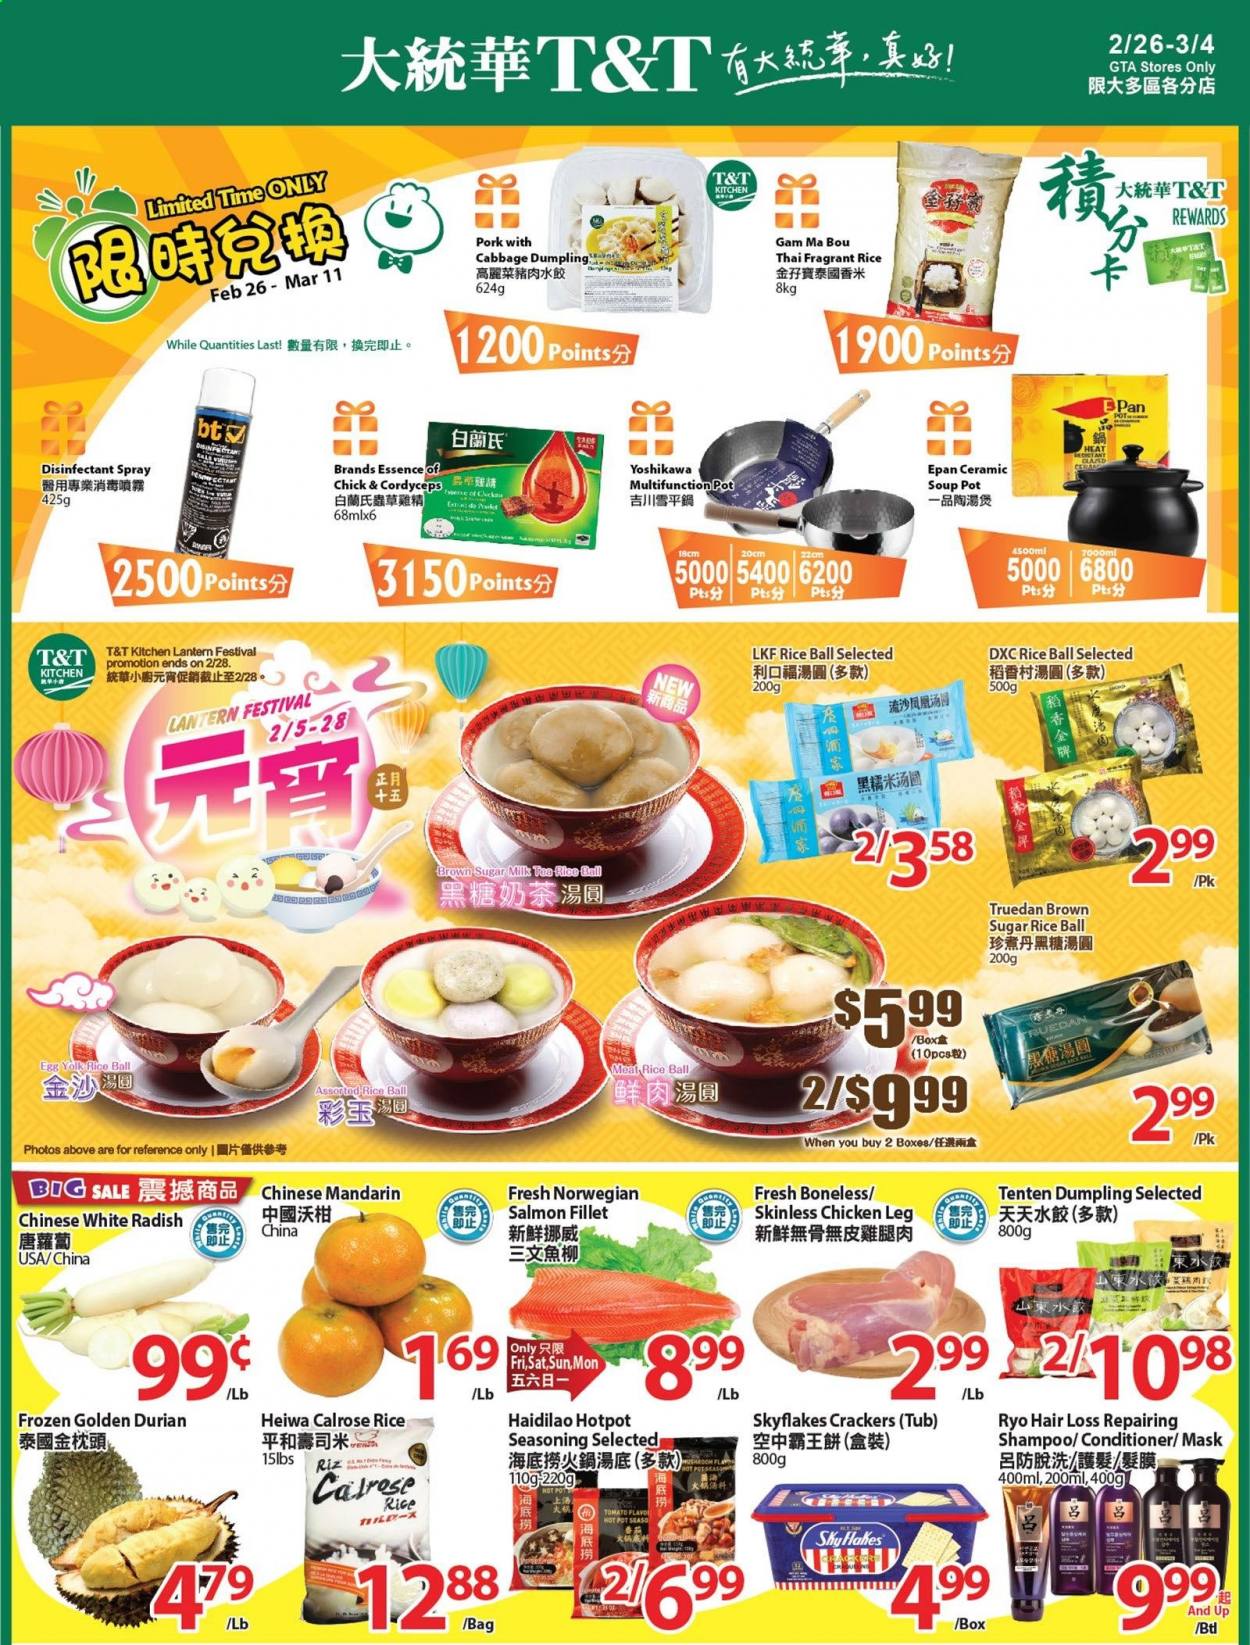 thumbnail - Circulaire T&T Supermarket - 26 Février 2021 - 04 Mars 2021 - Produits soldés - riz, crackers, shampooing. Page 1.